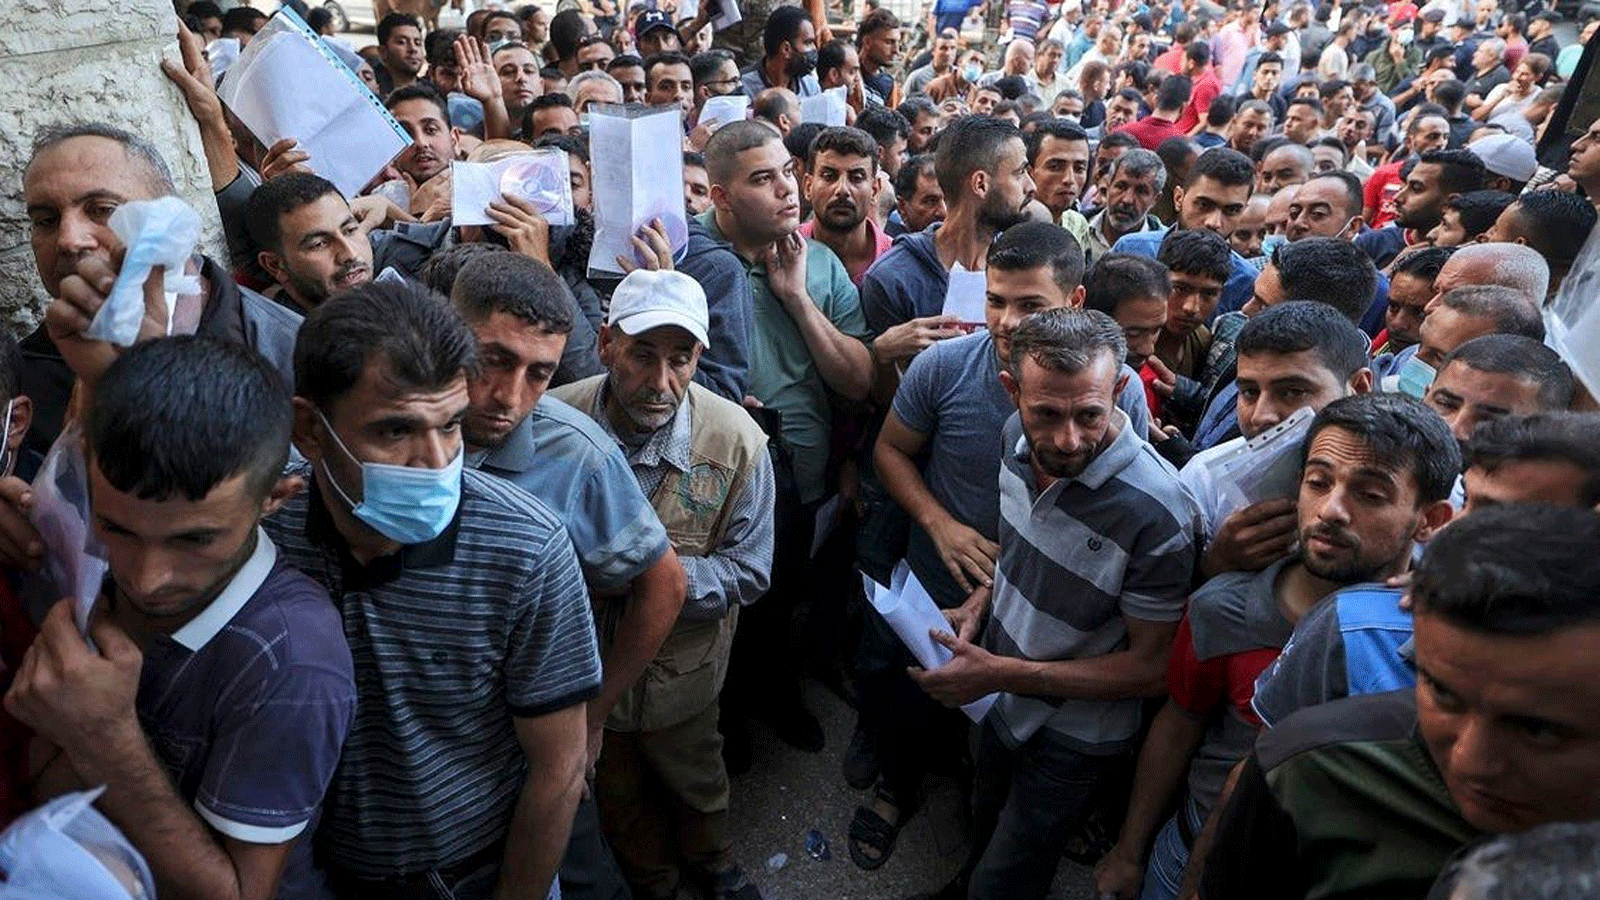  فلسطينيون يتجمعون لتقديم طلبات الحصول على تصاريح عمل في إسرائيل، في مخيم جباليا شمال قطاع غزة. 6 تشرين الأول/أكتوبر2021